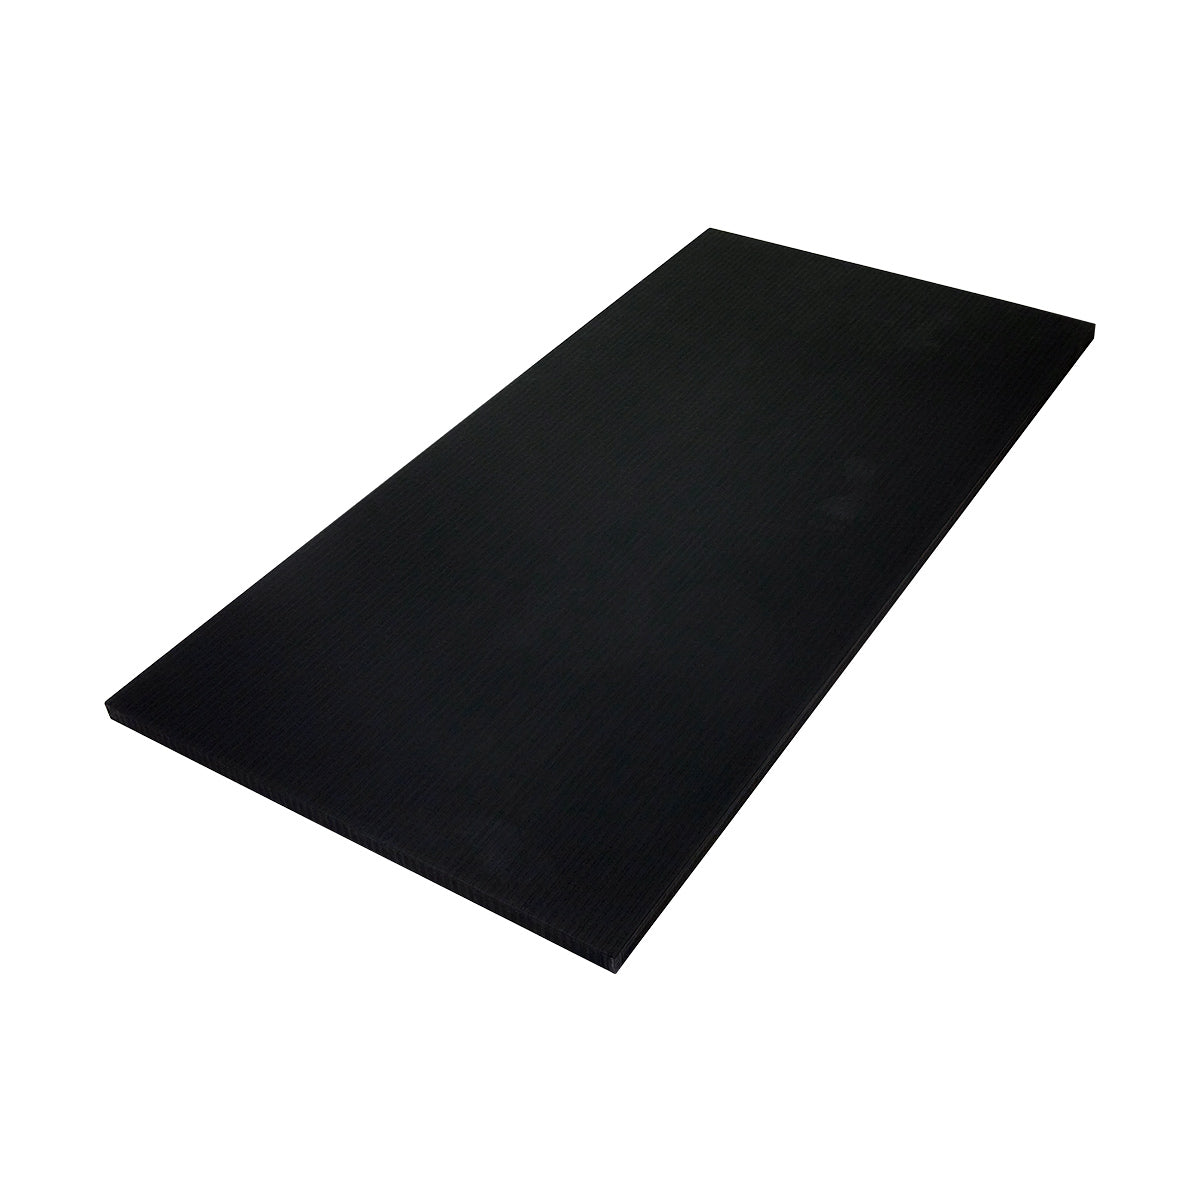 Tatami Tile Mat 1m x 2m x 1.5" Black